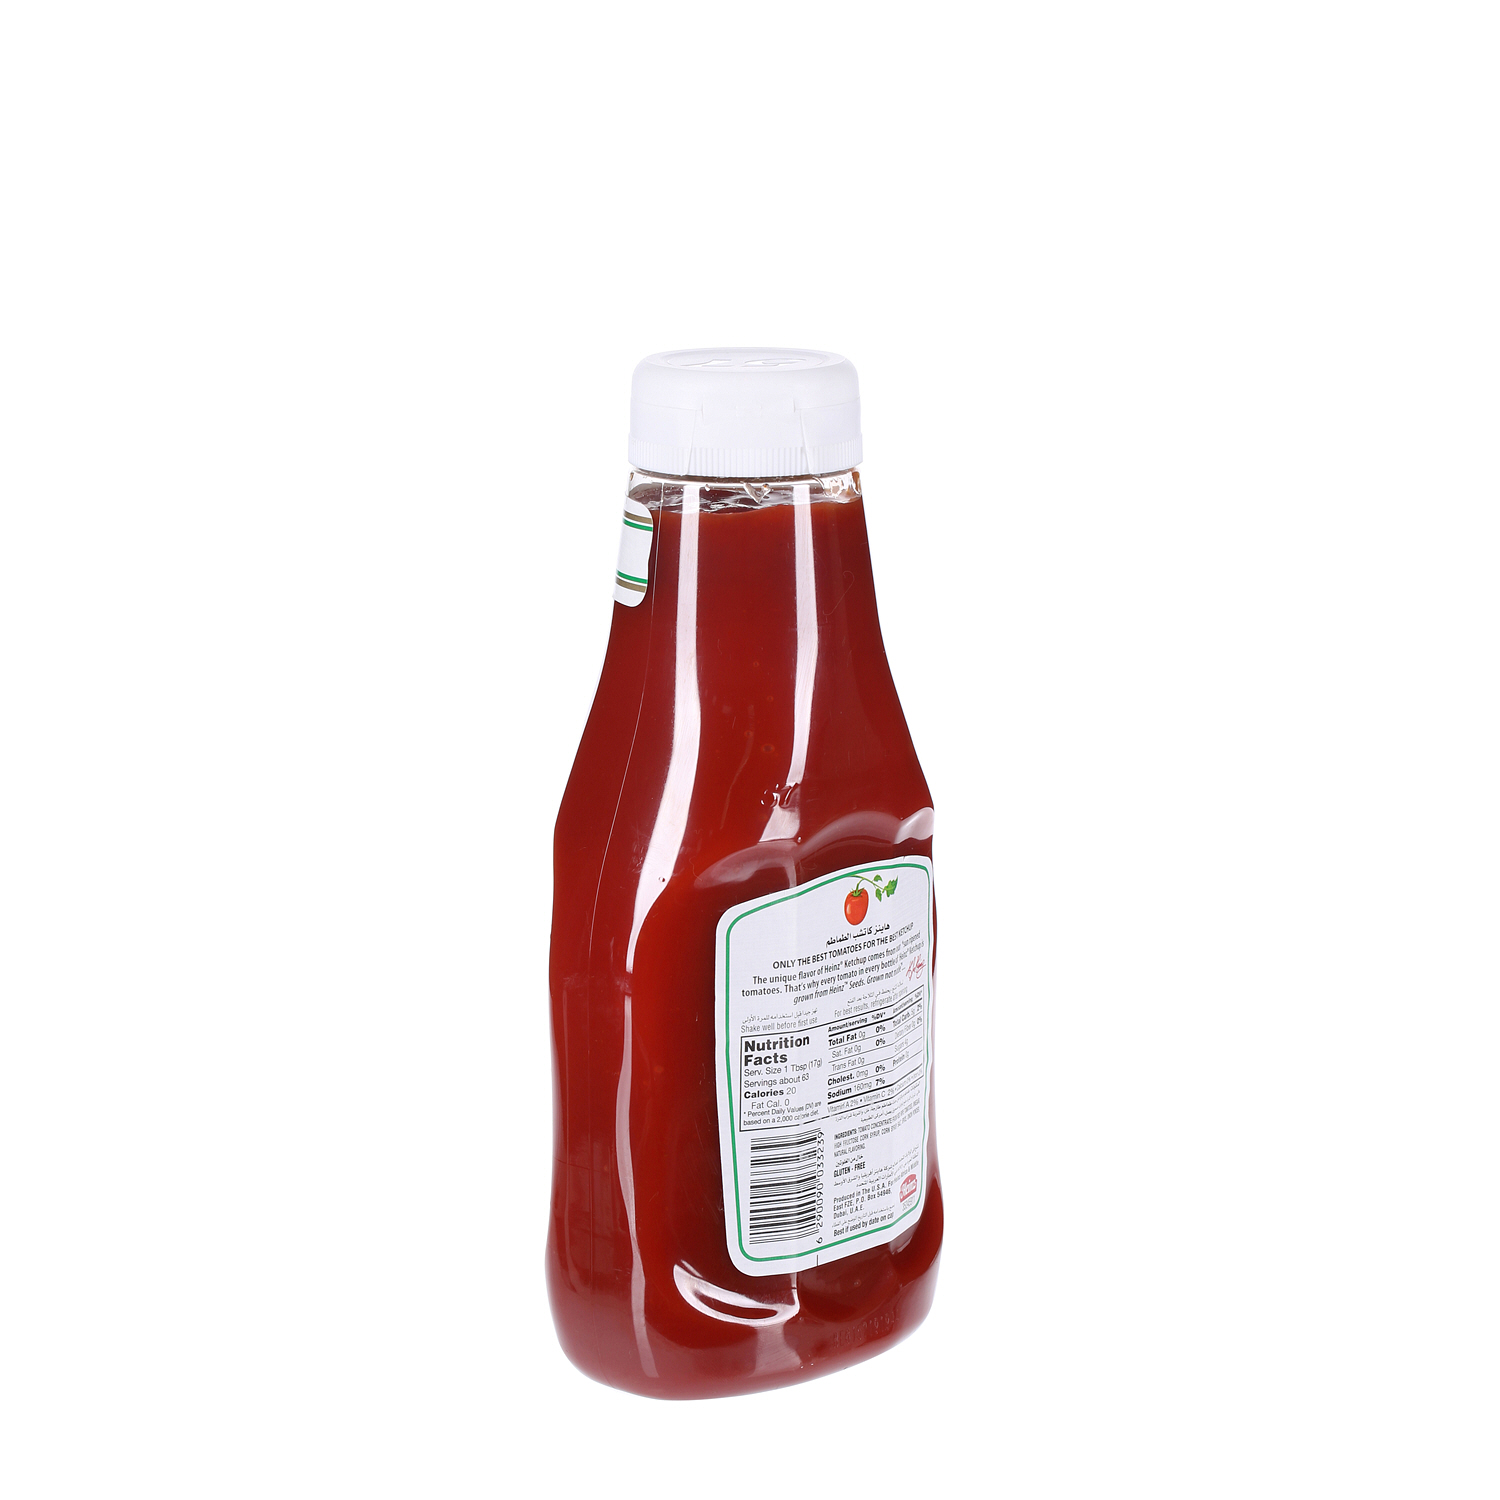 Heinz Tomato Ketchup 38Oz